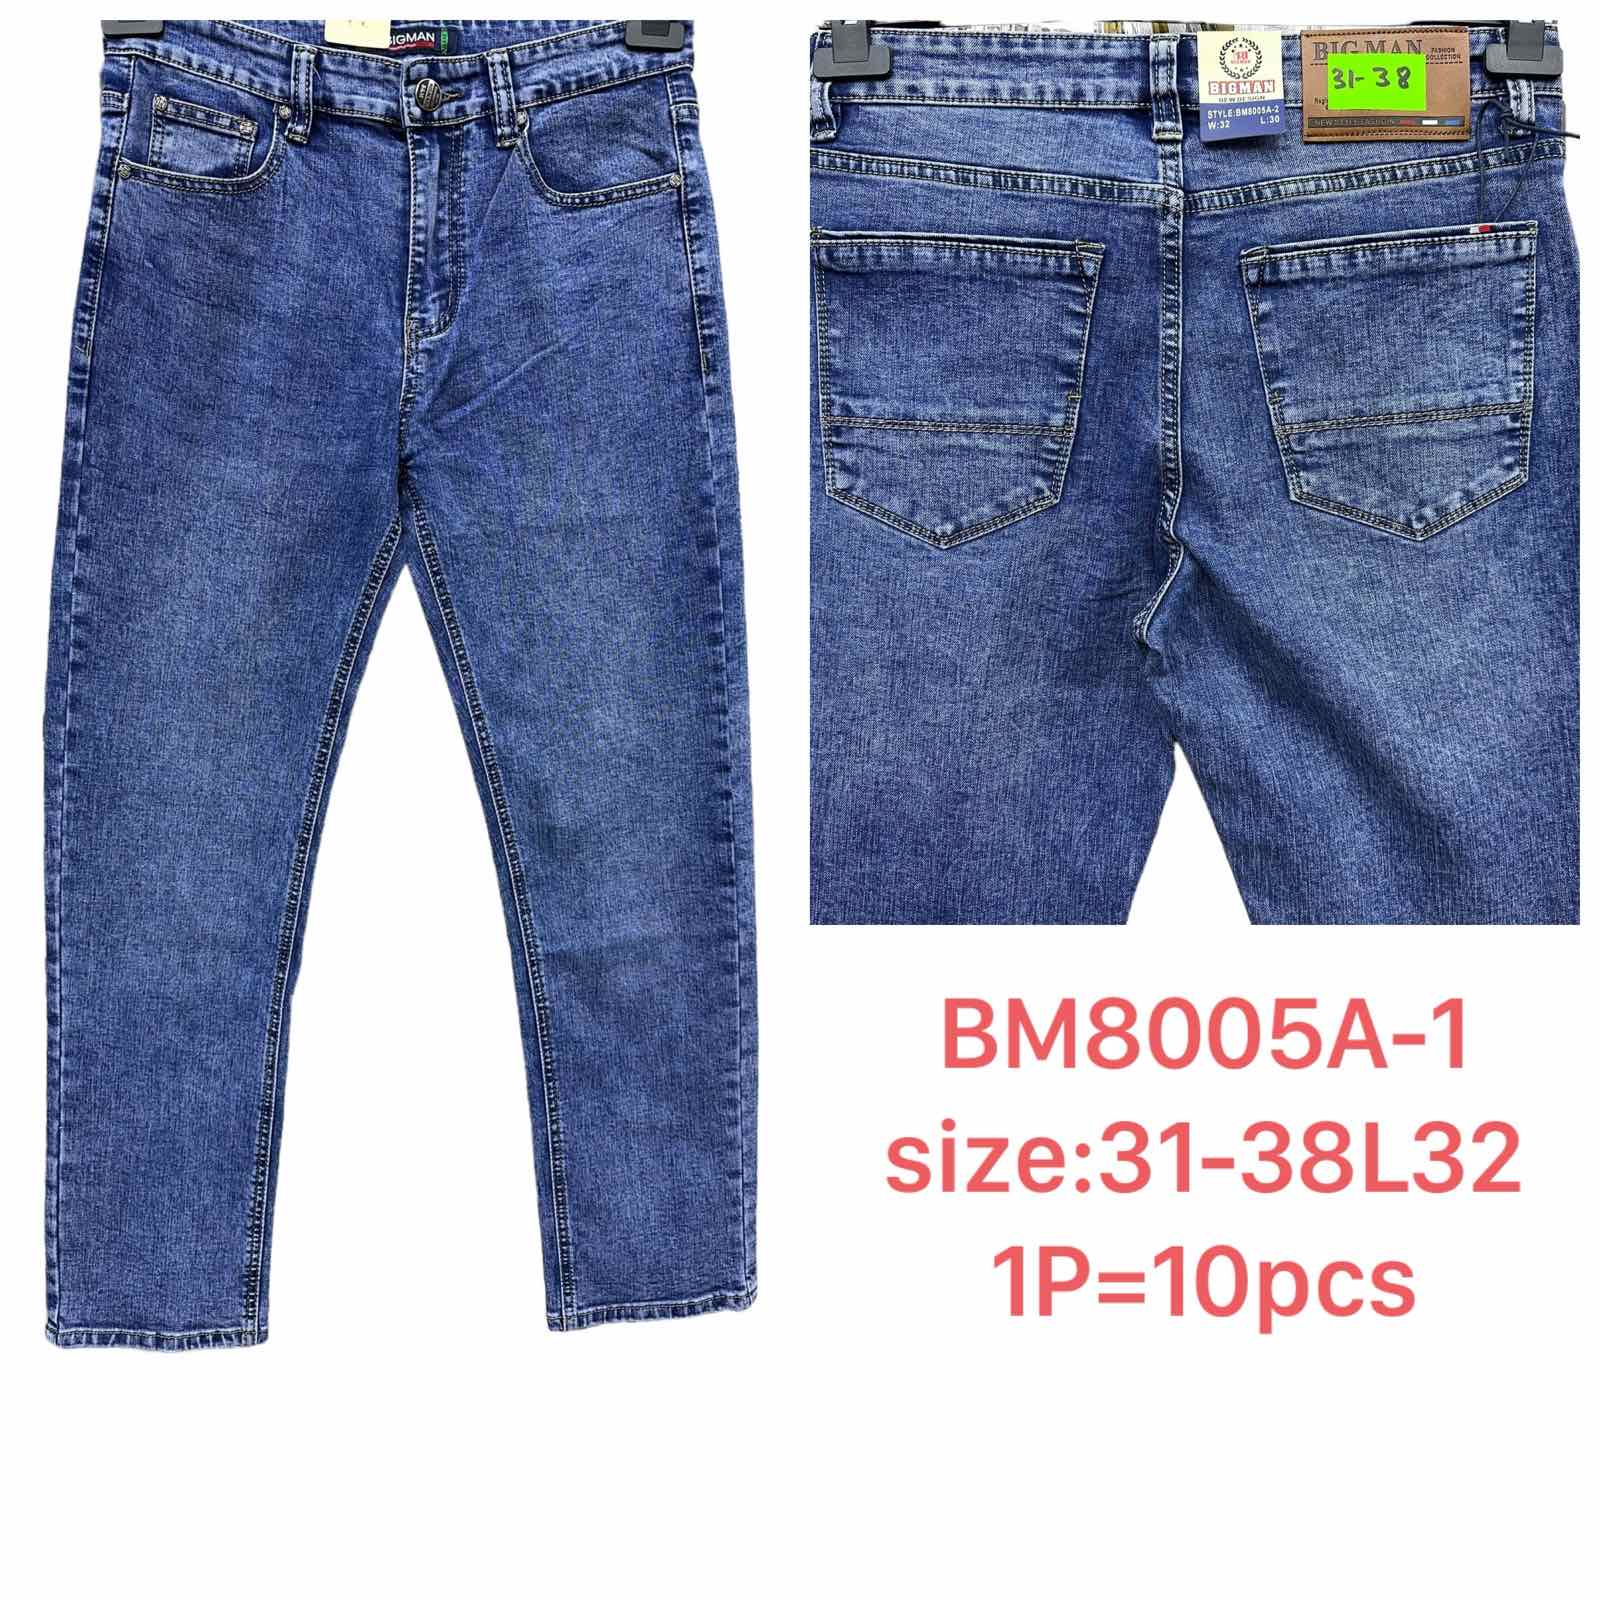 Spodnie meskie jeans  Roz 31-38 L32 Paczka 10szt